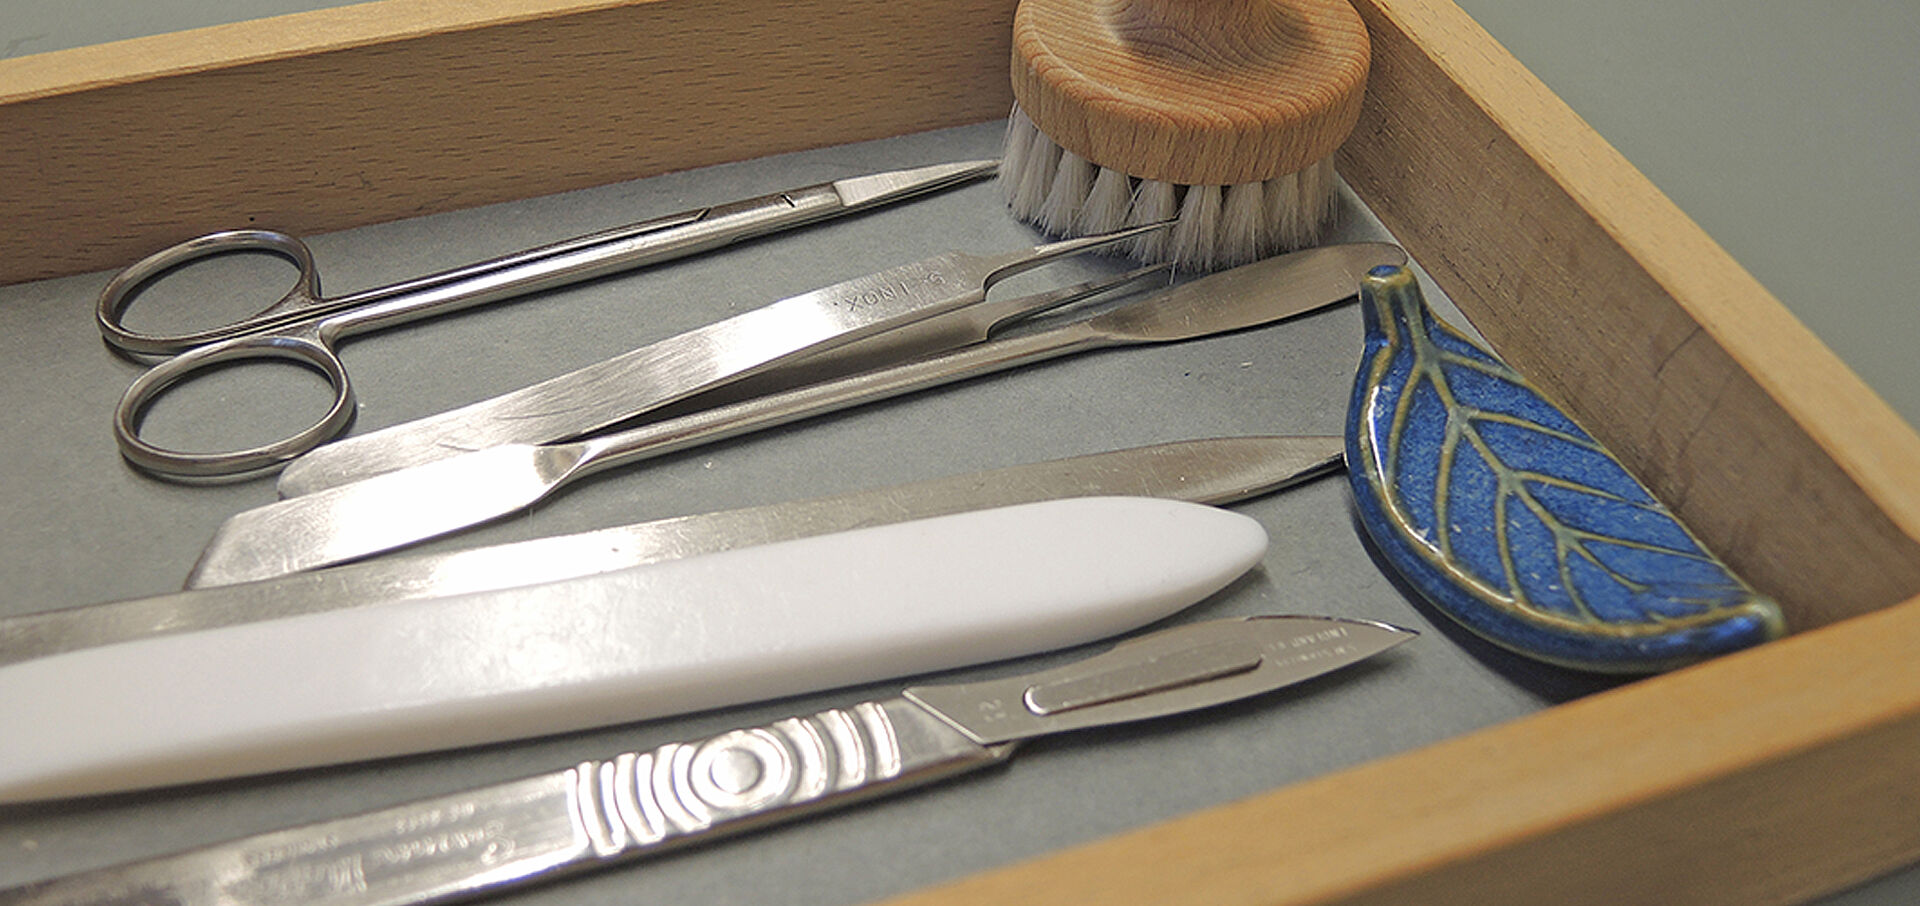 Schere, Pinzette, Messer, Bürste und andere Restaurier-Werkzeuge in einer Holzbox